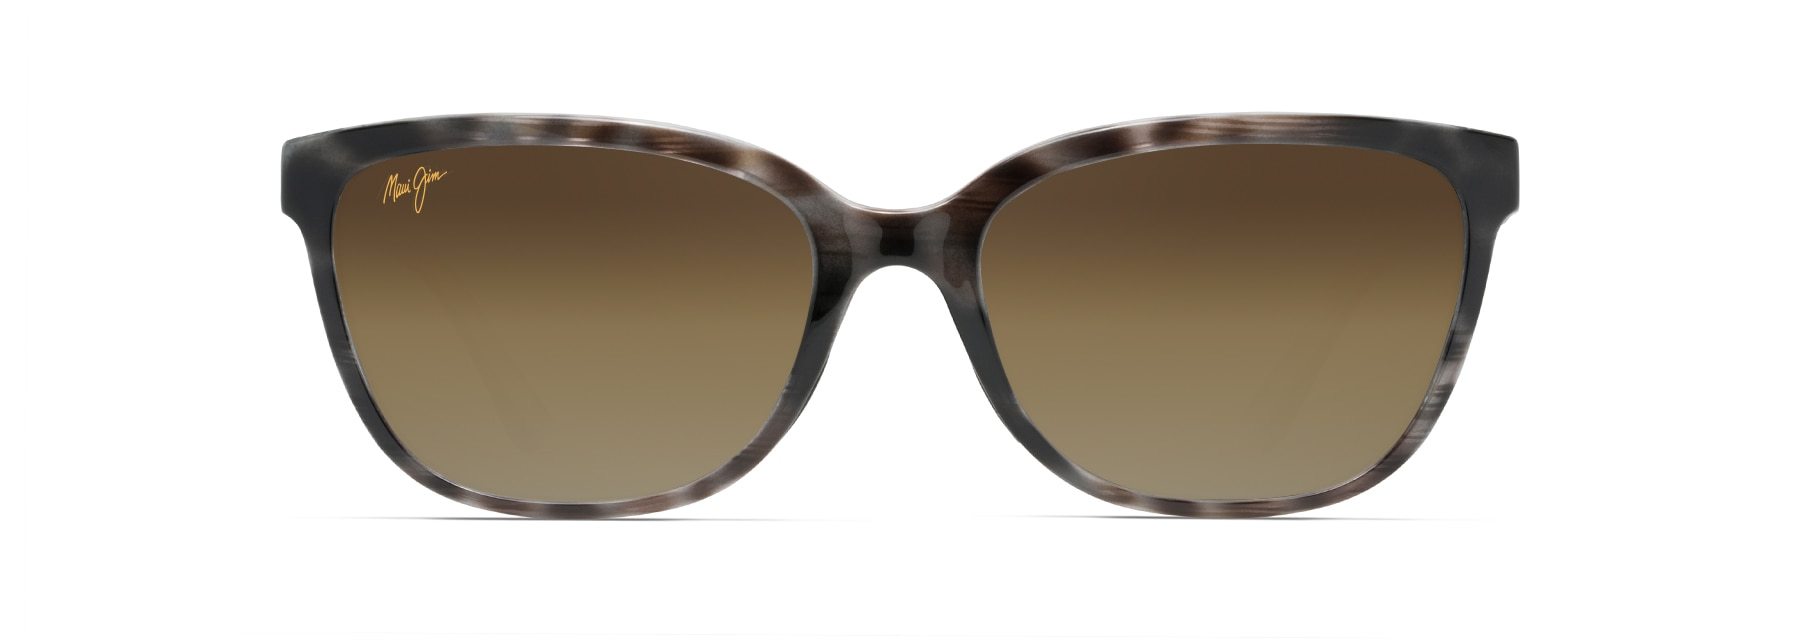 MyMaui Honi MM758-001 Sunglasses